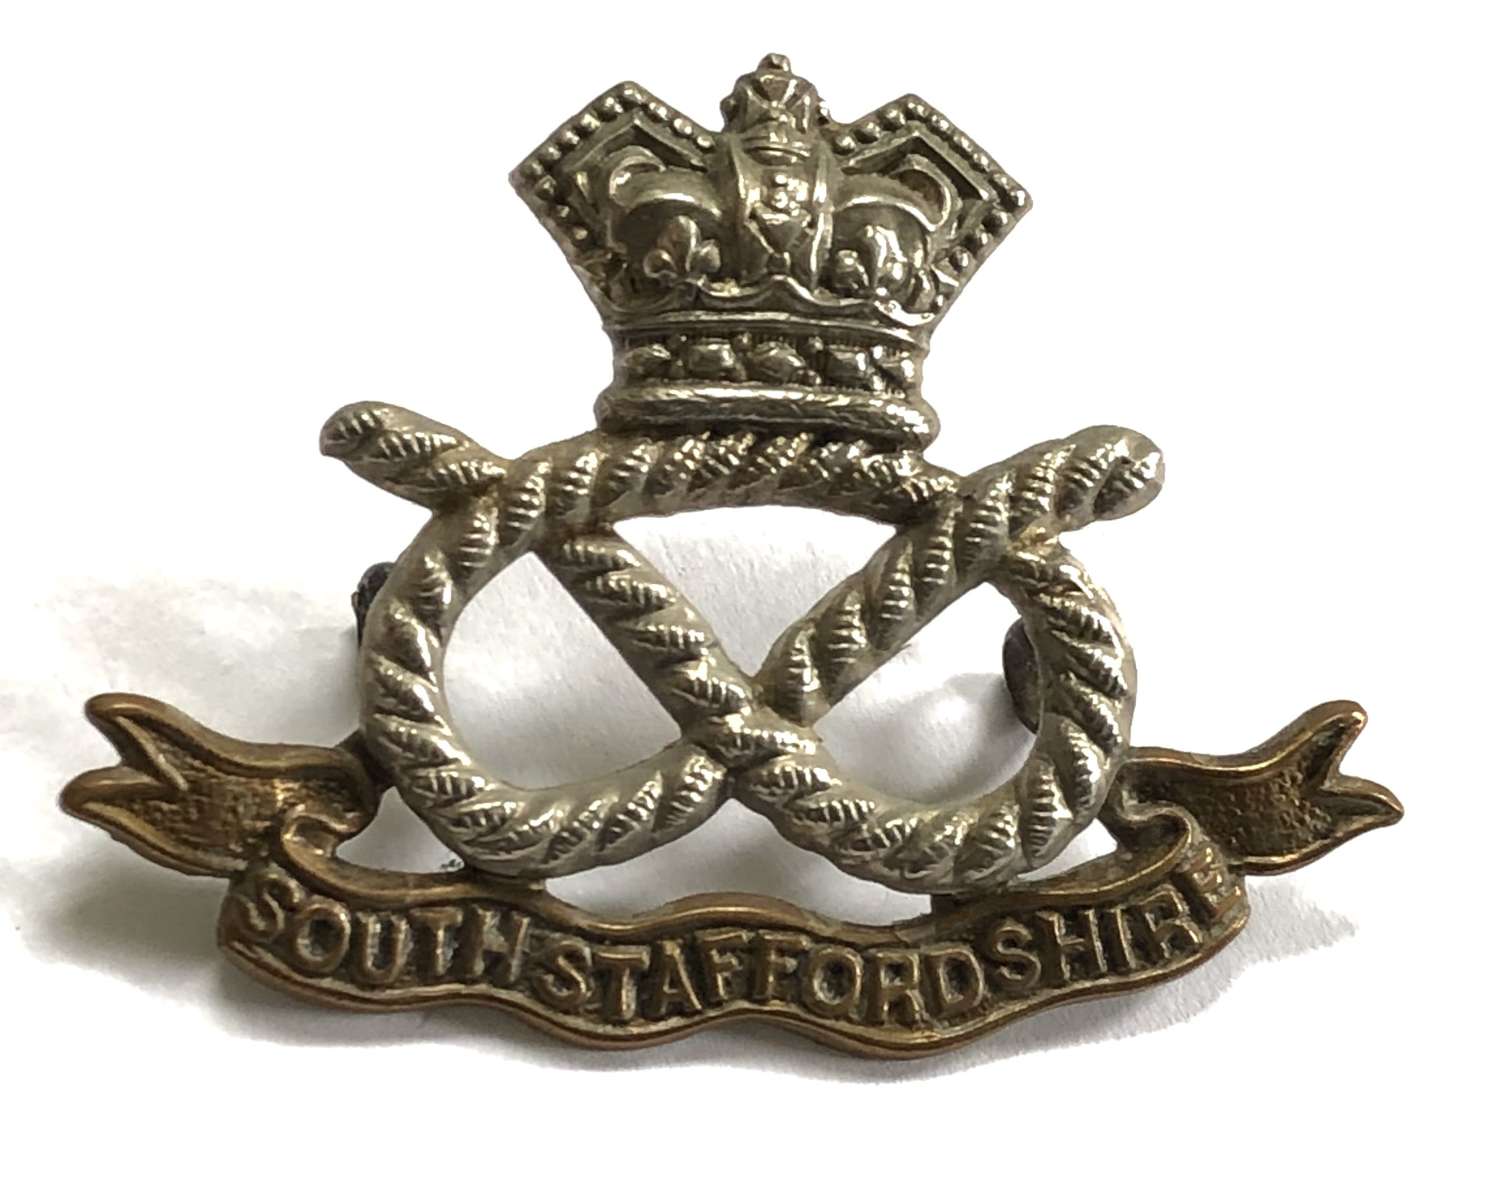 South Staffordshire Regiment Victorian bi-metal cap badge c1896-1901